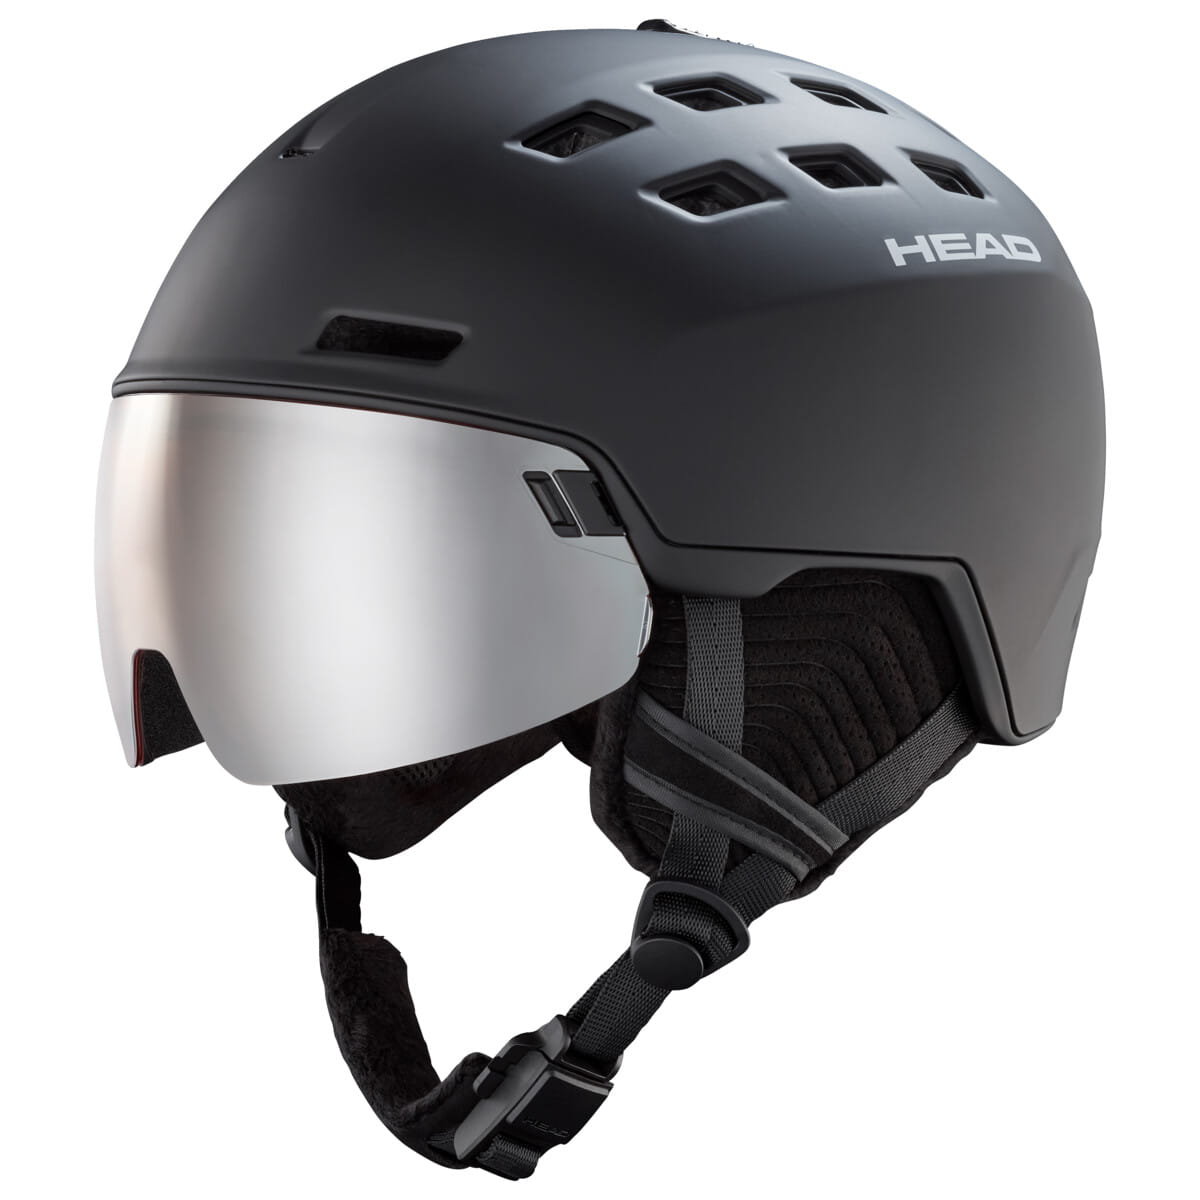 Kask narciarski Head Radar czarny - M/L